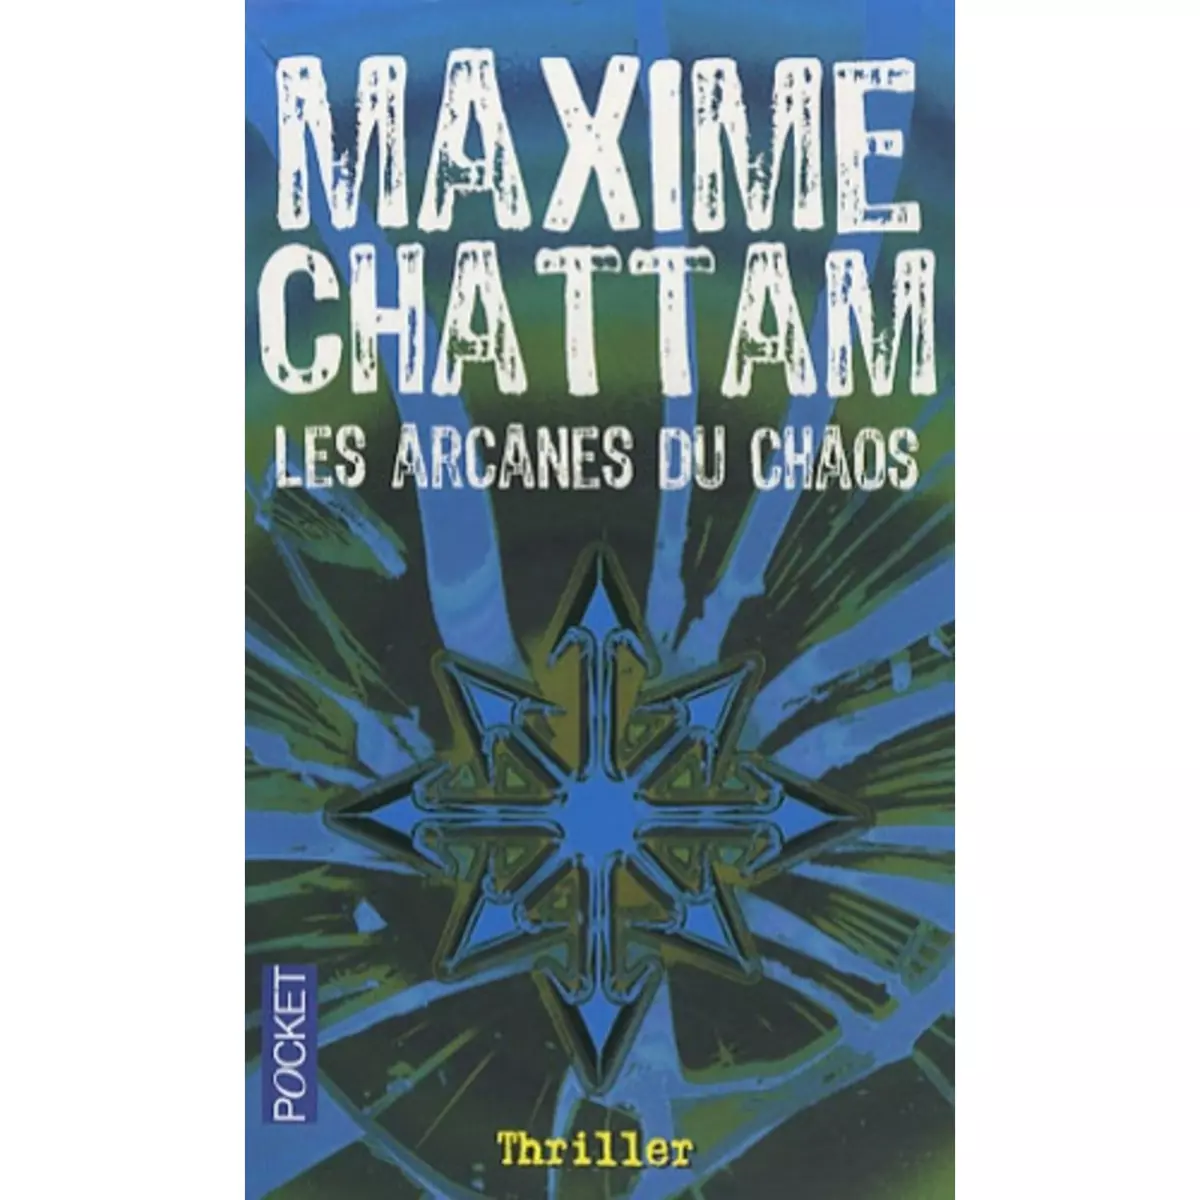  LES ARCANES DU CHAOS, Chattam Maxime